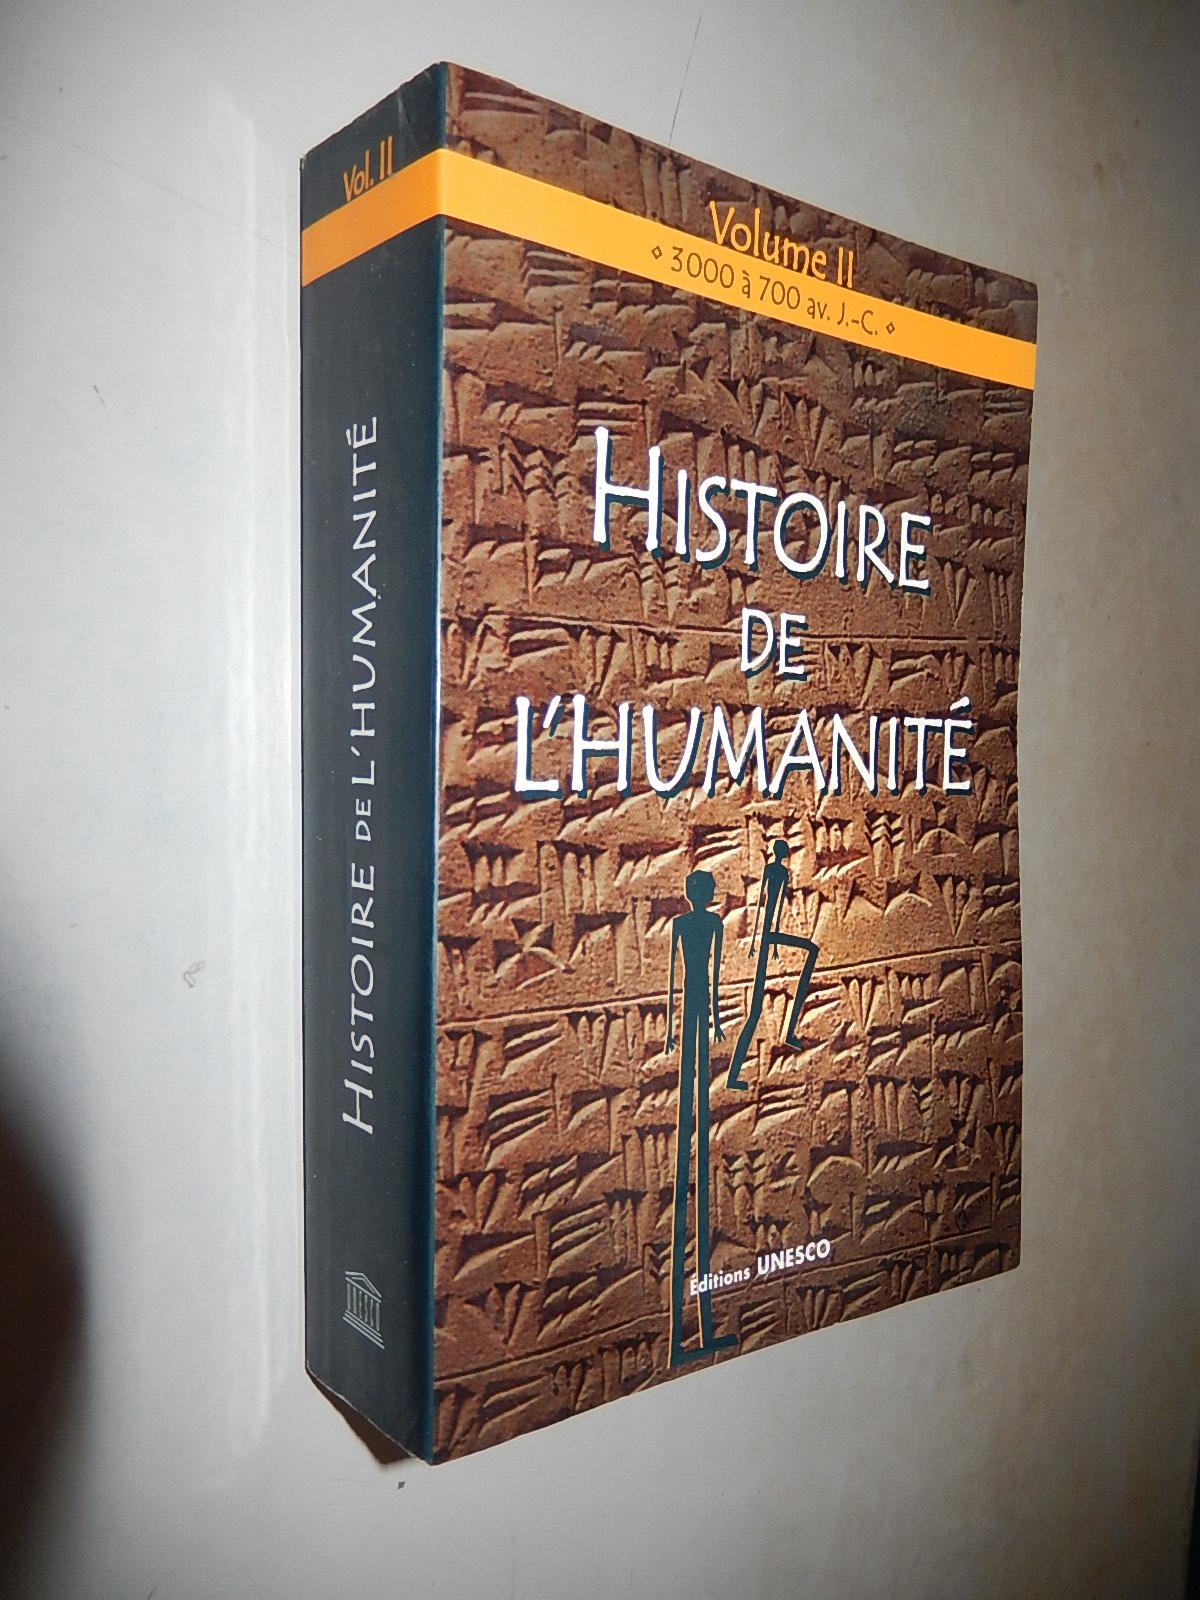 Histoire de Lhumanité Volume 2: 3000 à 700 avant j-c 人類史 第二卷 公元前3000至700年 法文原版 插圖版